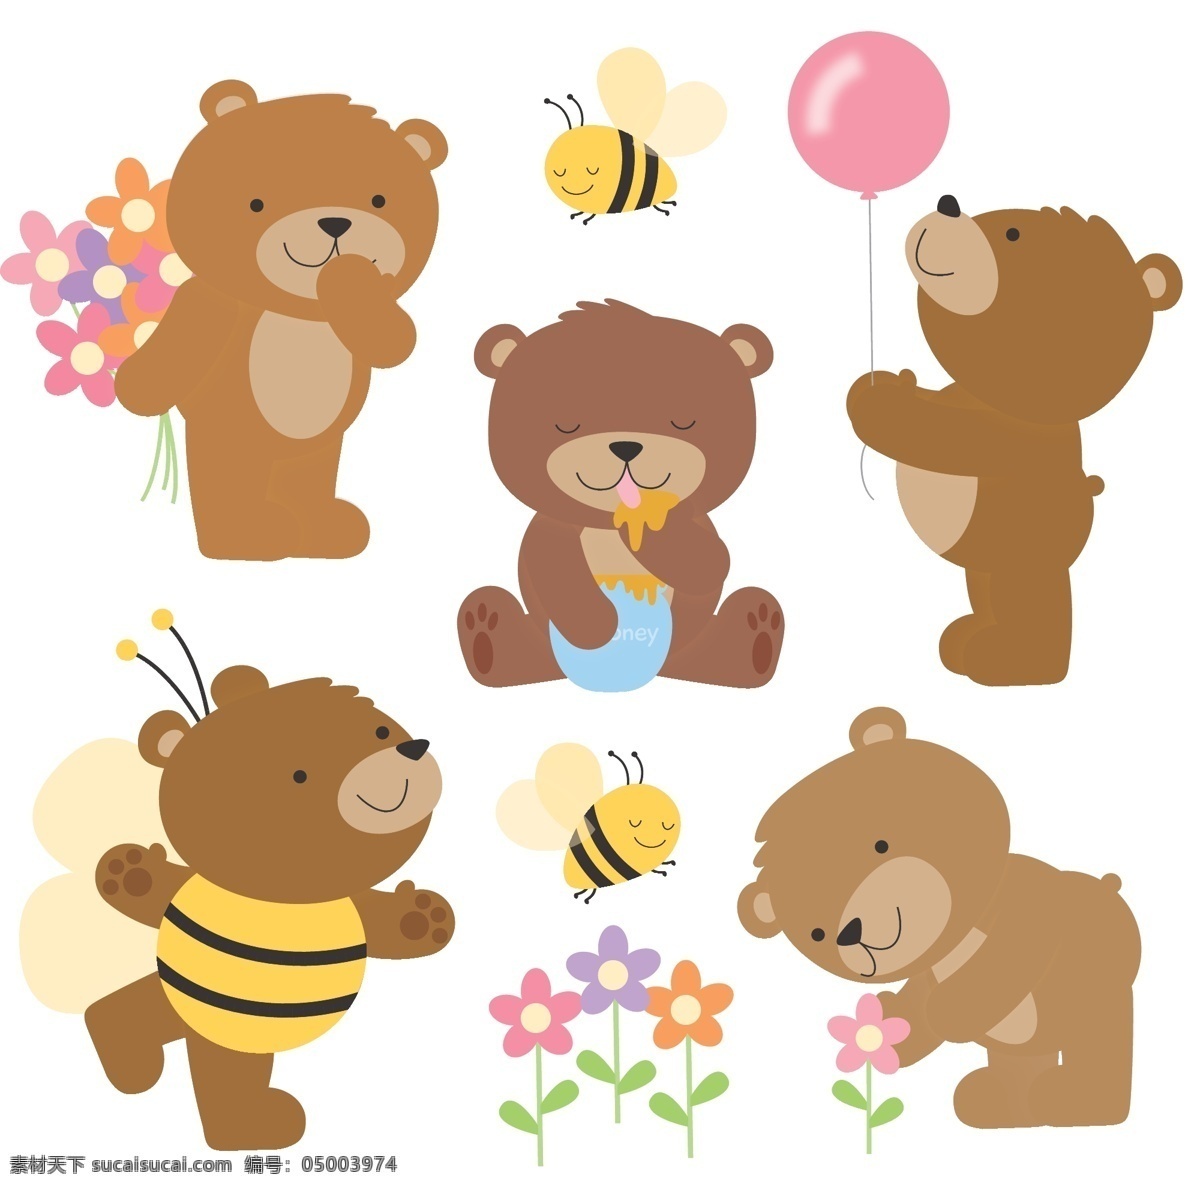 卡通 熊 包装设计 卡通设计 卡通熊 可爱熊 矢量 模板下载 本本熊 笔熊 毛绒熊 psd源文件